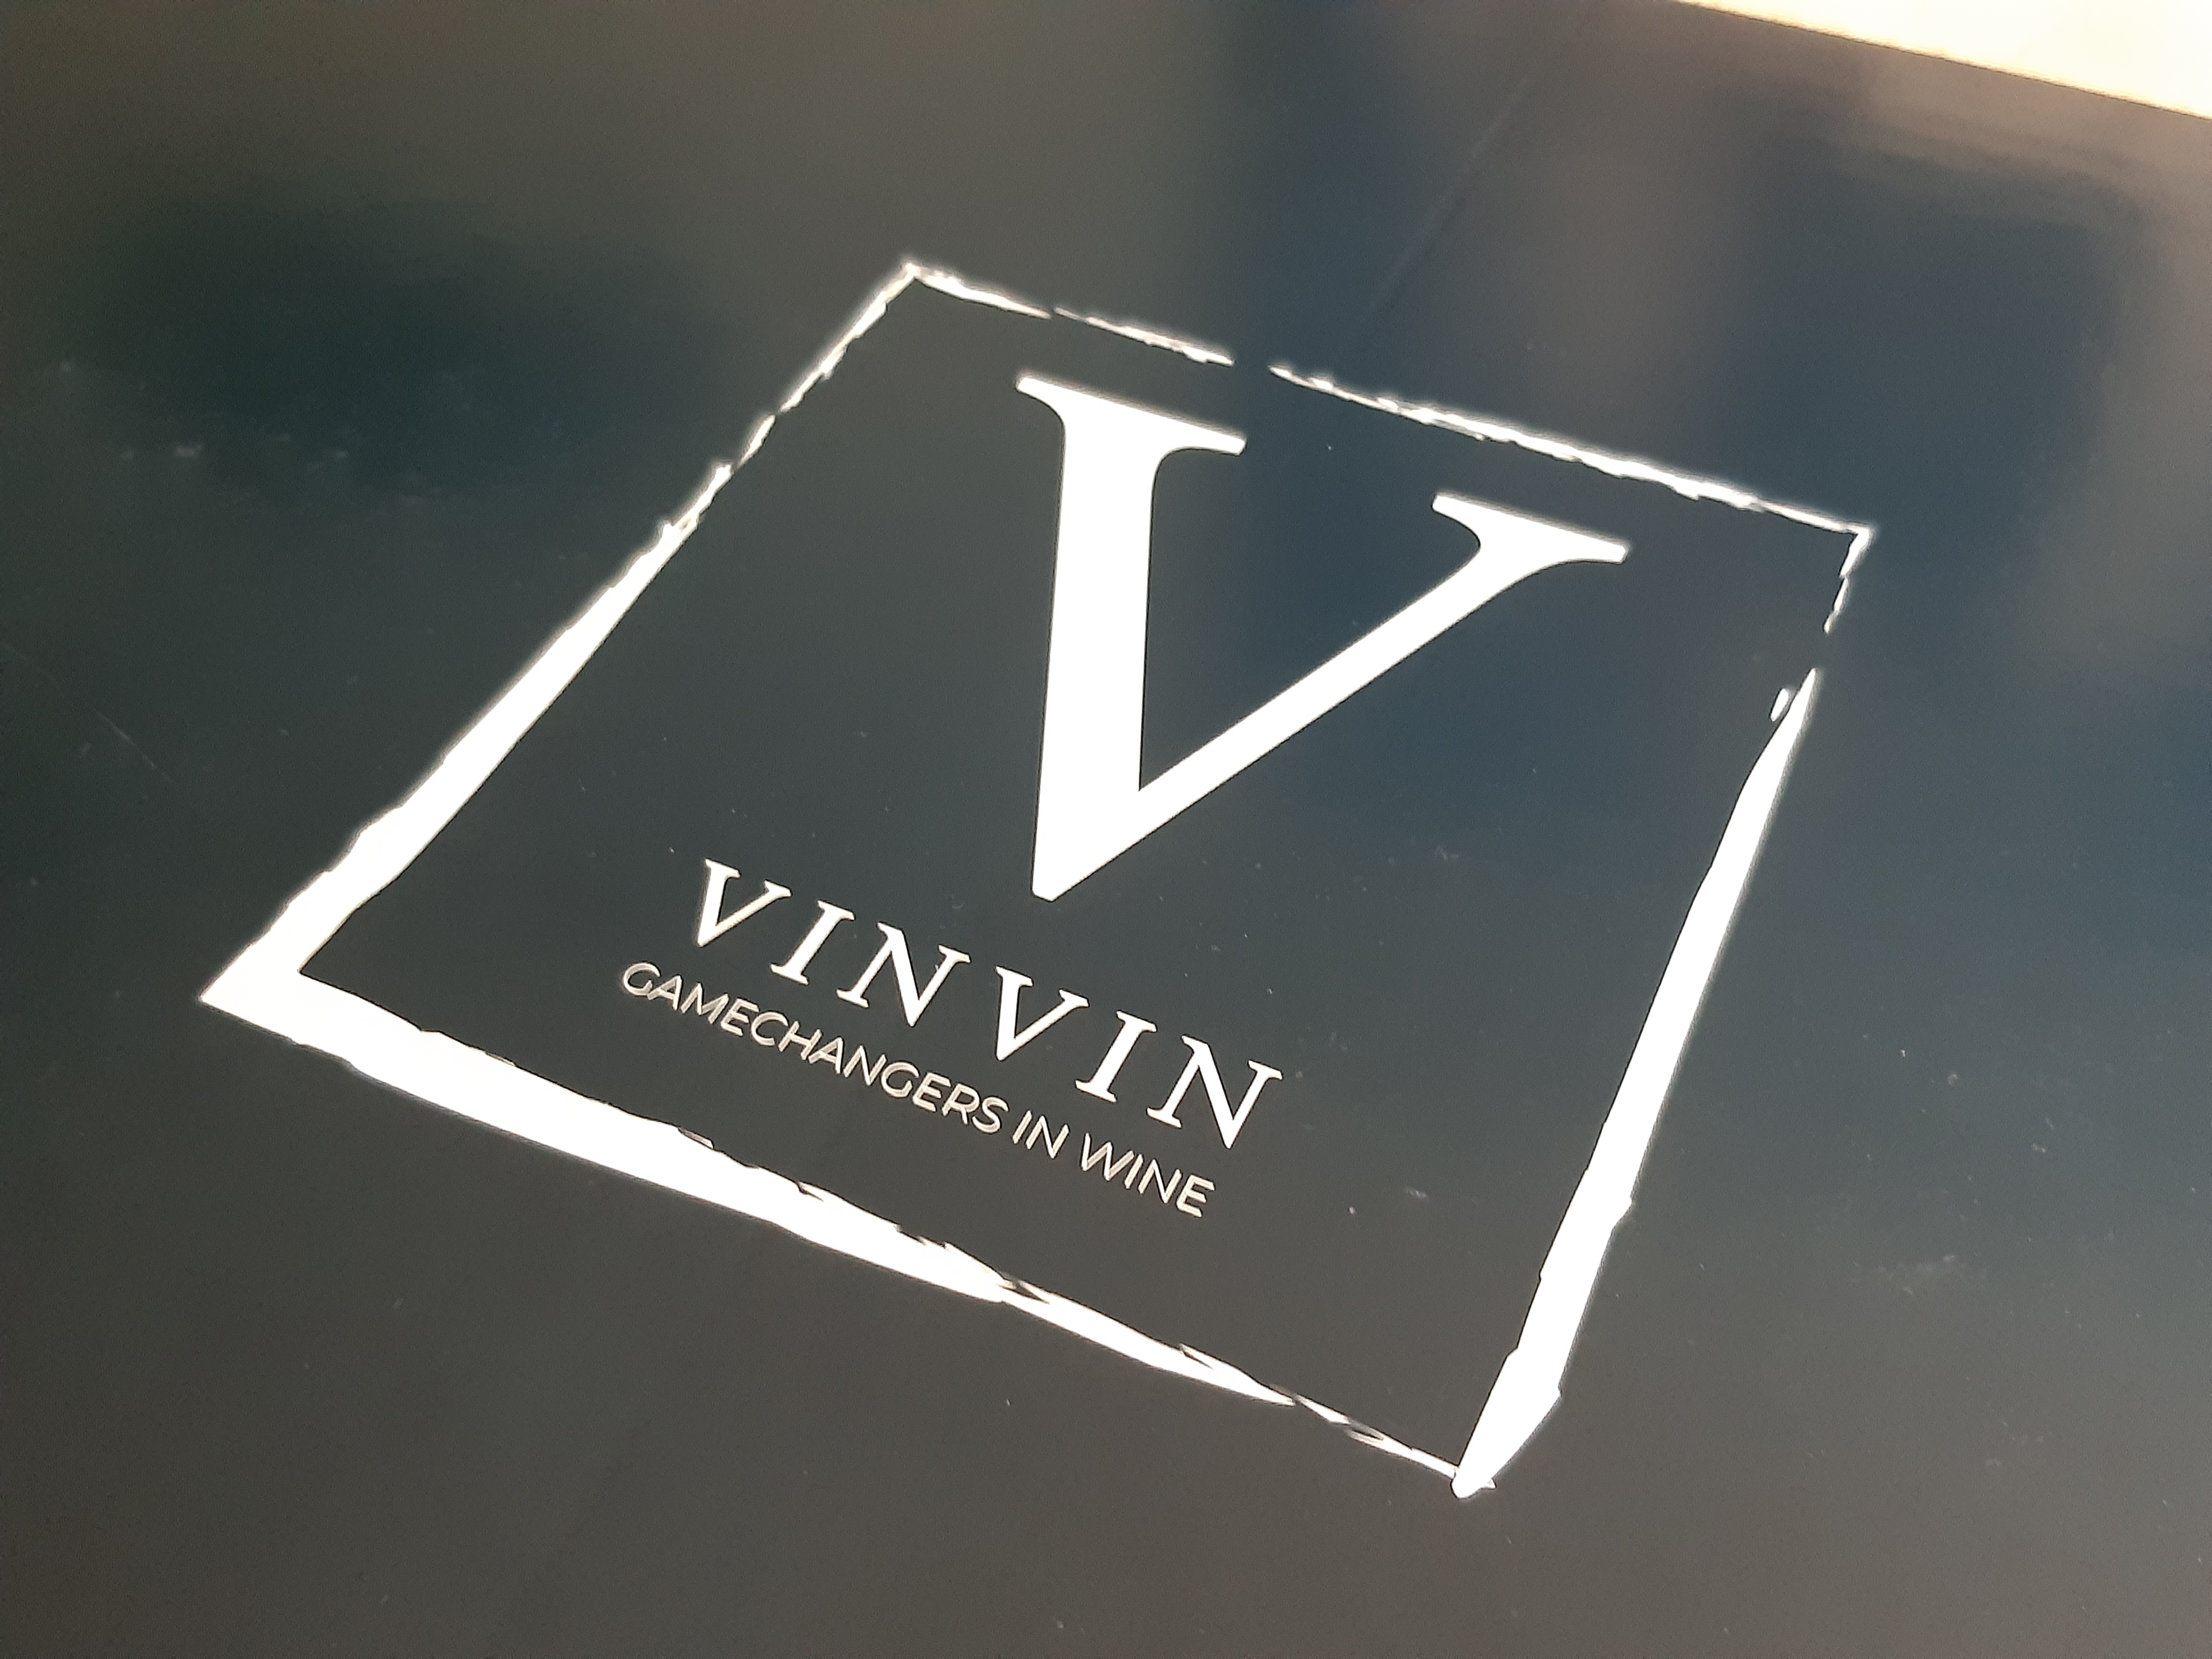 VINVIN Wines. Het nieuwe exclusieve online wijnplatform